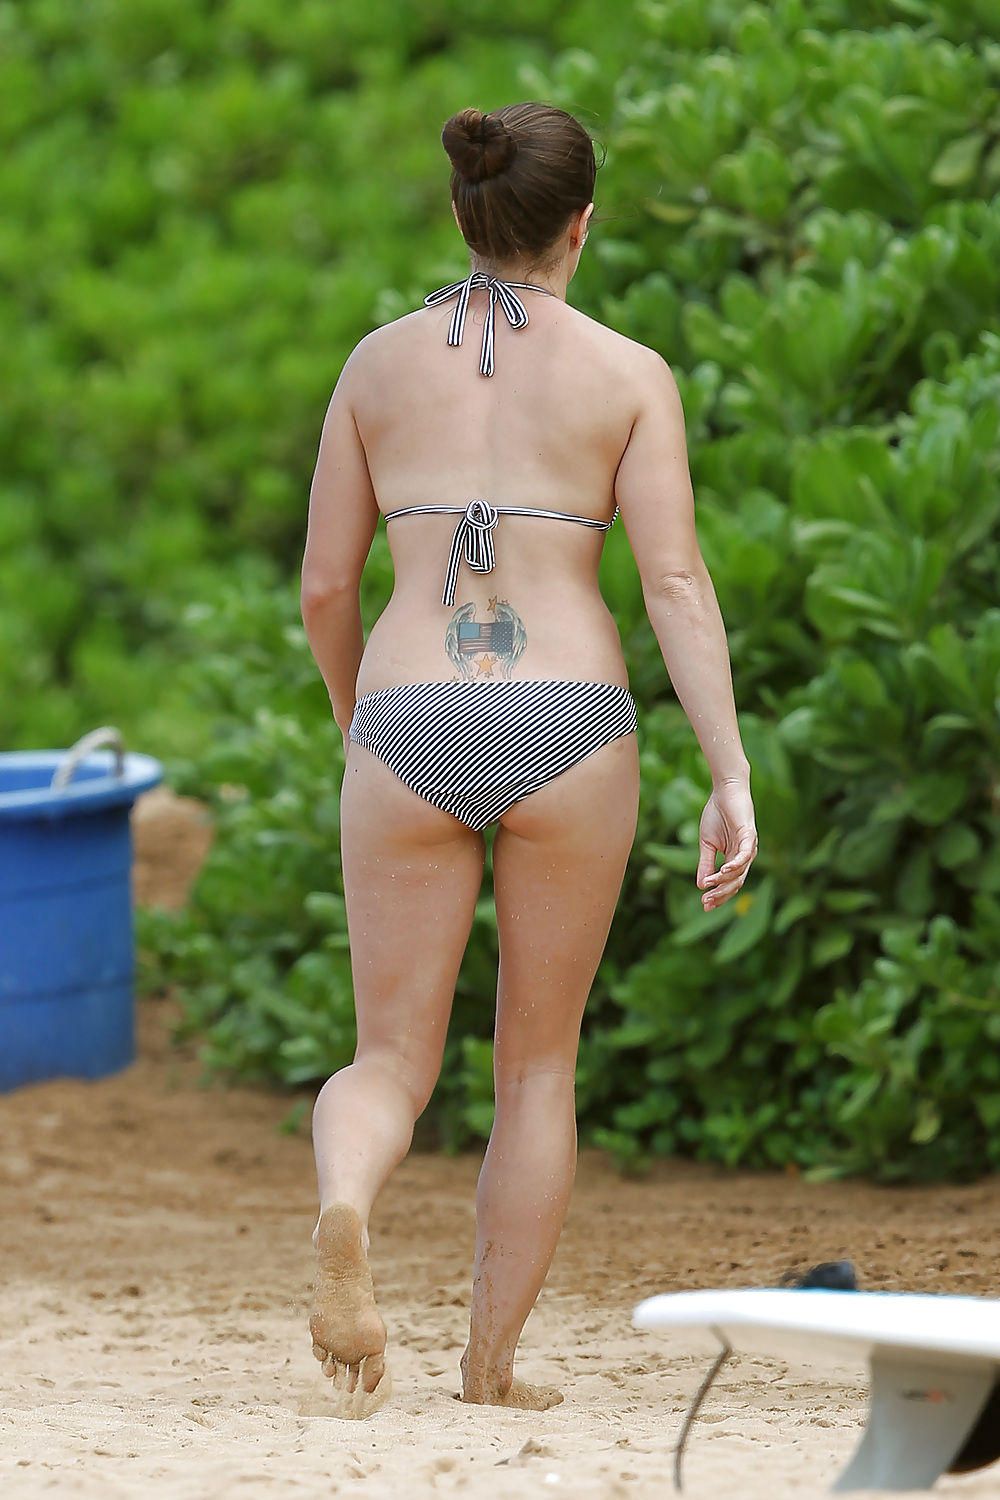 Danica patrick che indossa un bikini su una spiaggia in hawaii
 #6481275